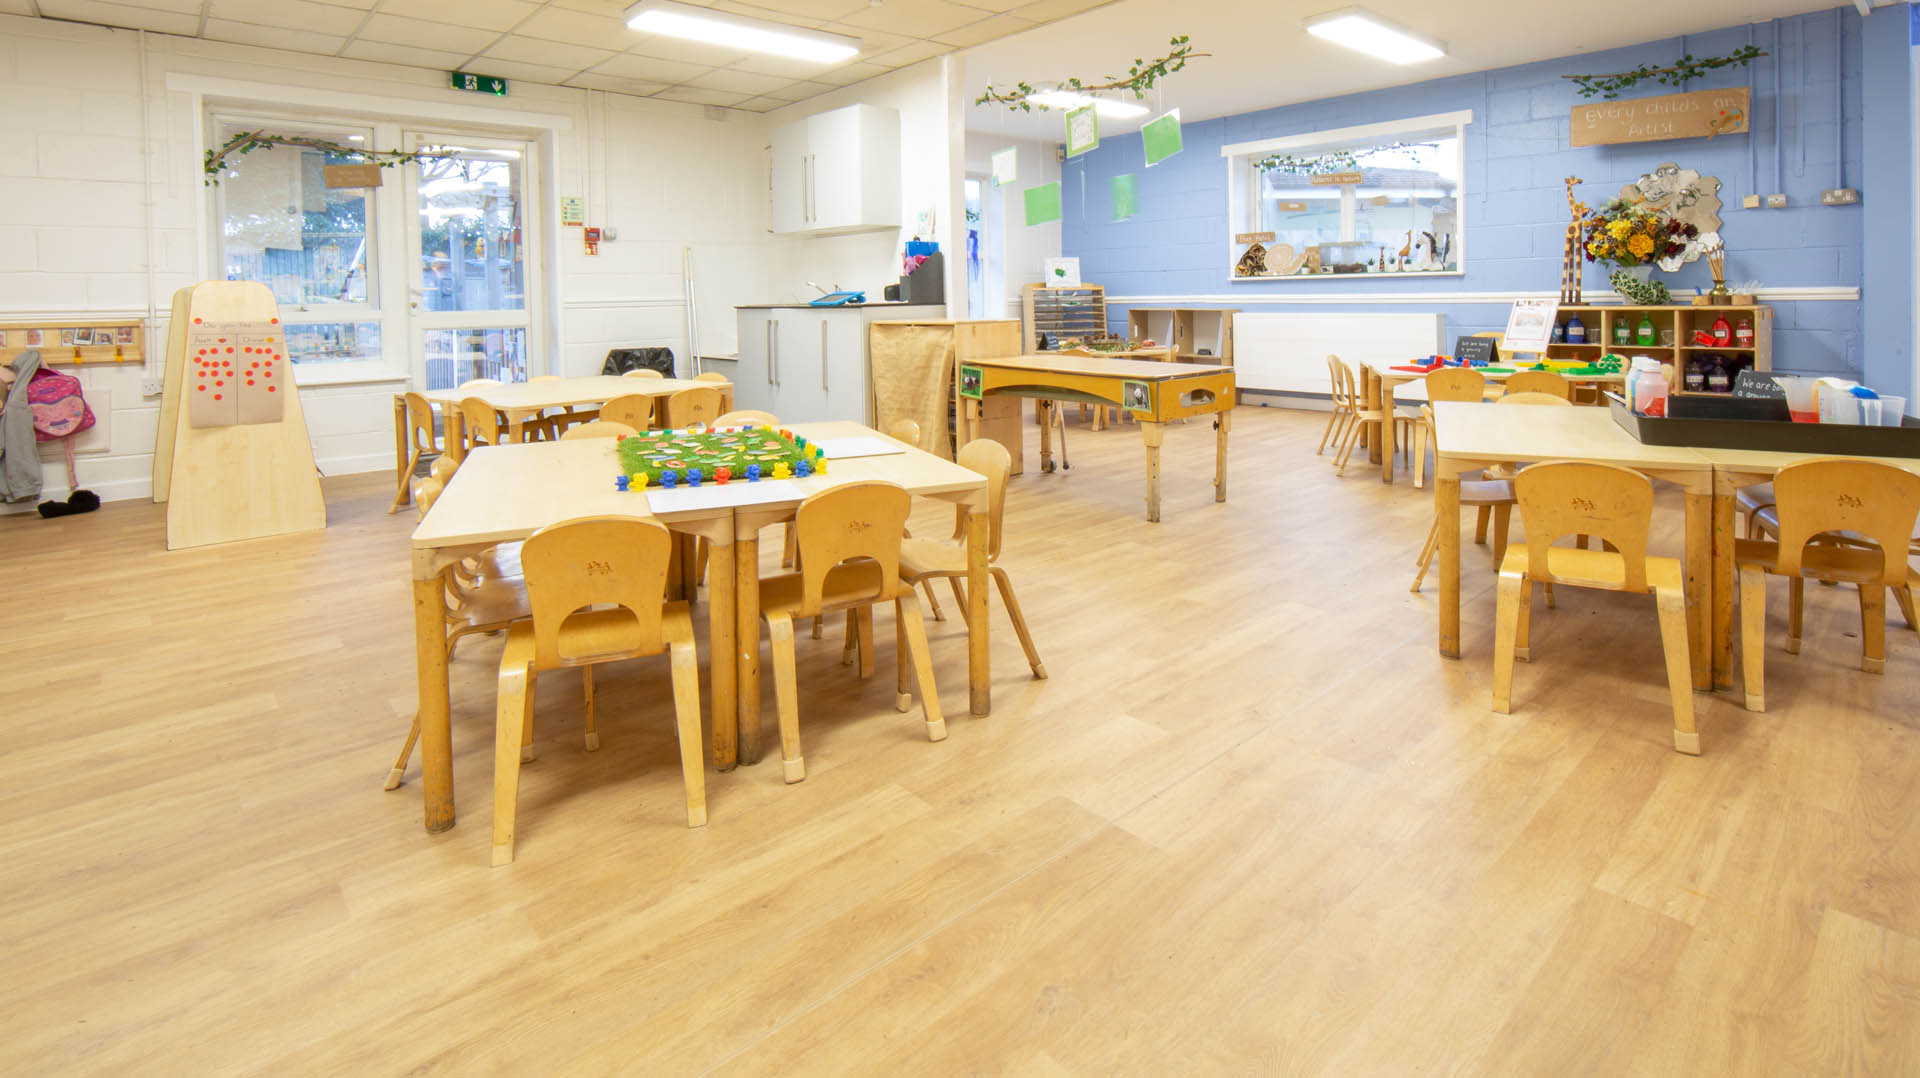 Hinckley Day Nursery and Preschool - Preschool Room